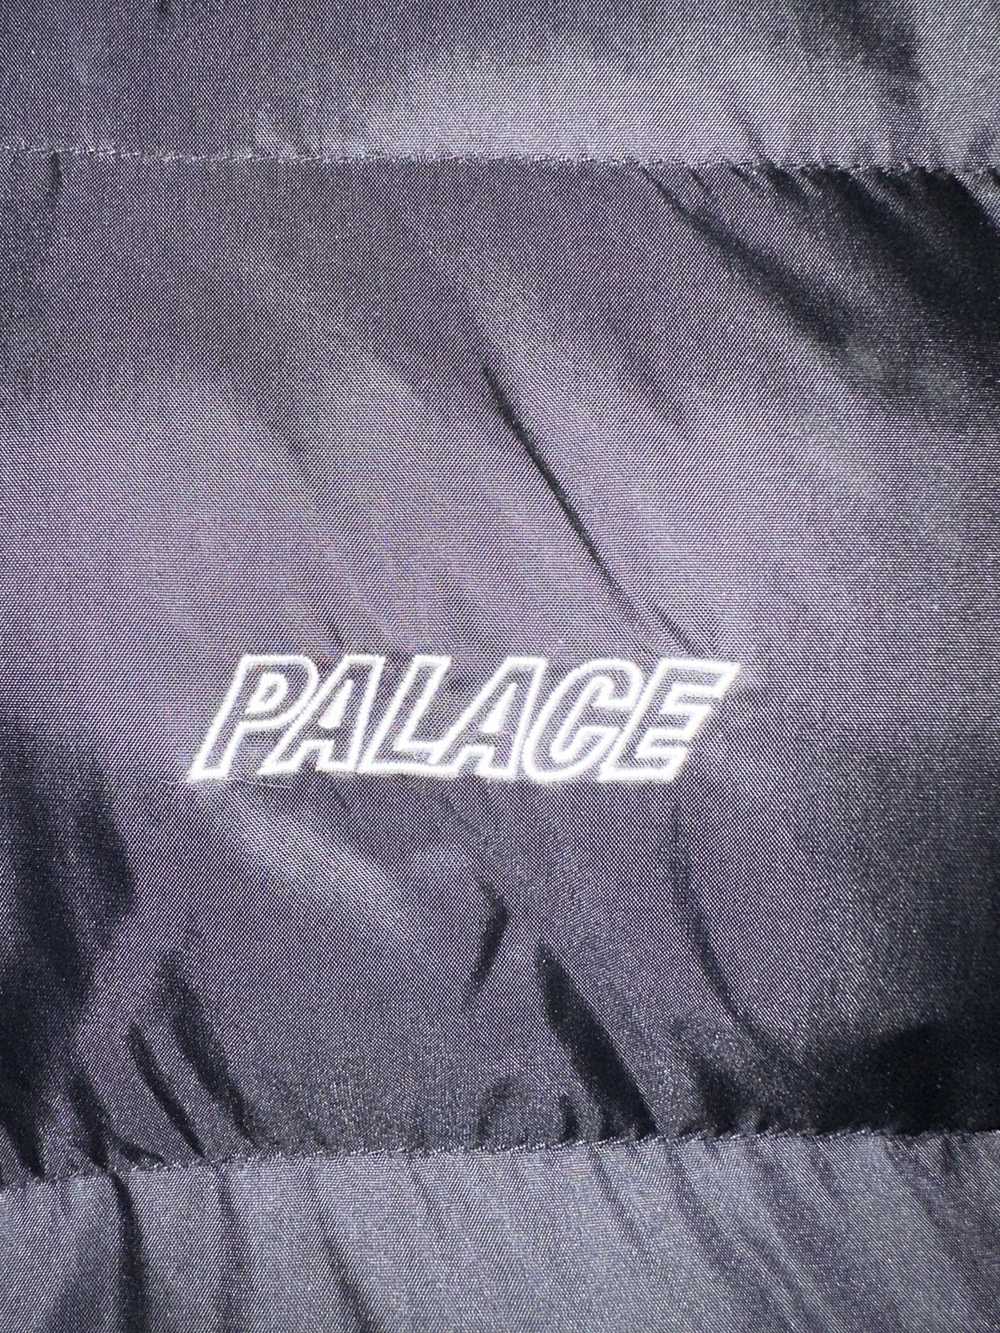 Palace Palace half zip puffa - image 8